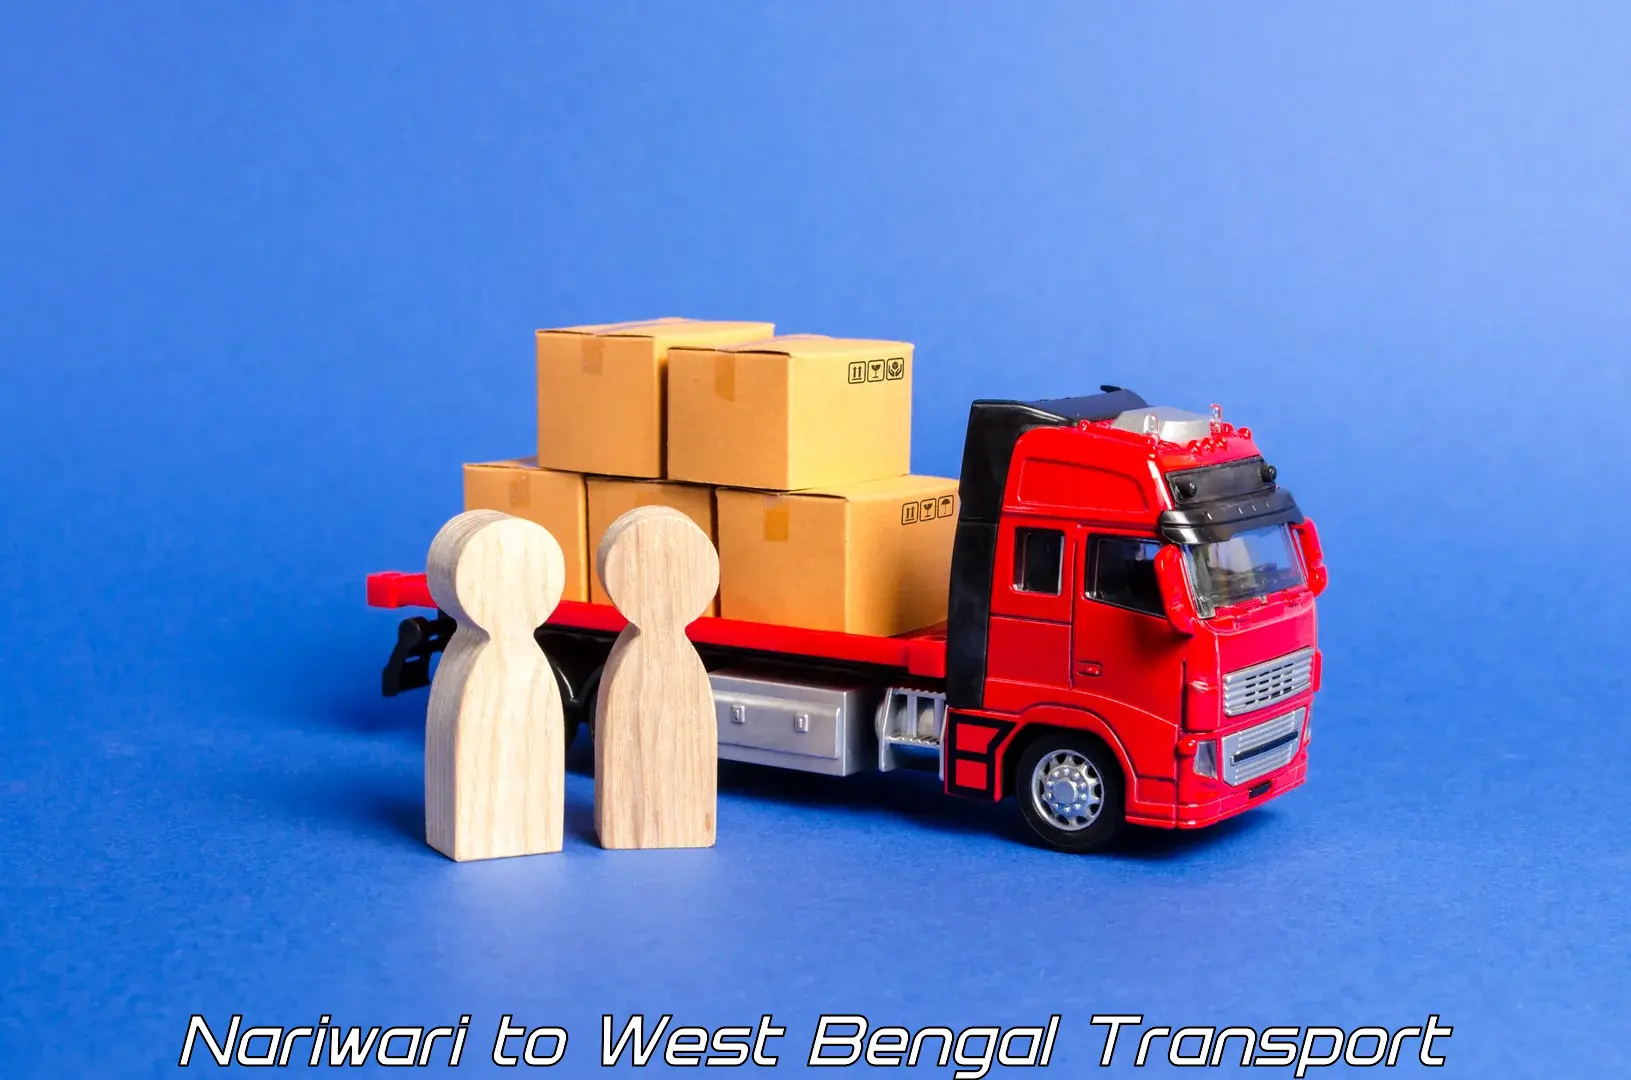 Transport shared services Nariwari to Lodhan